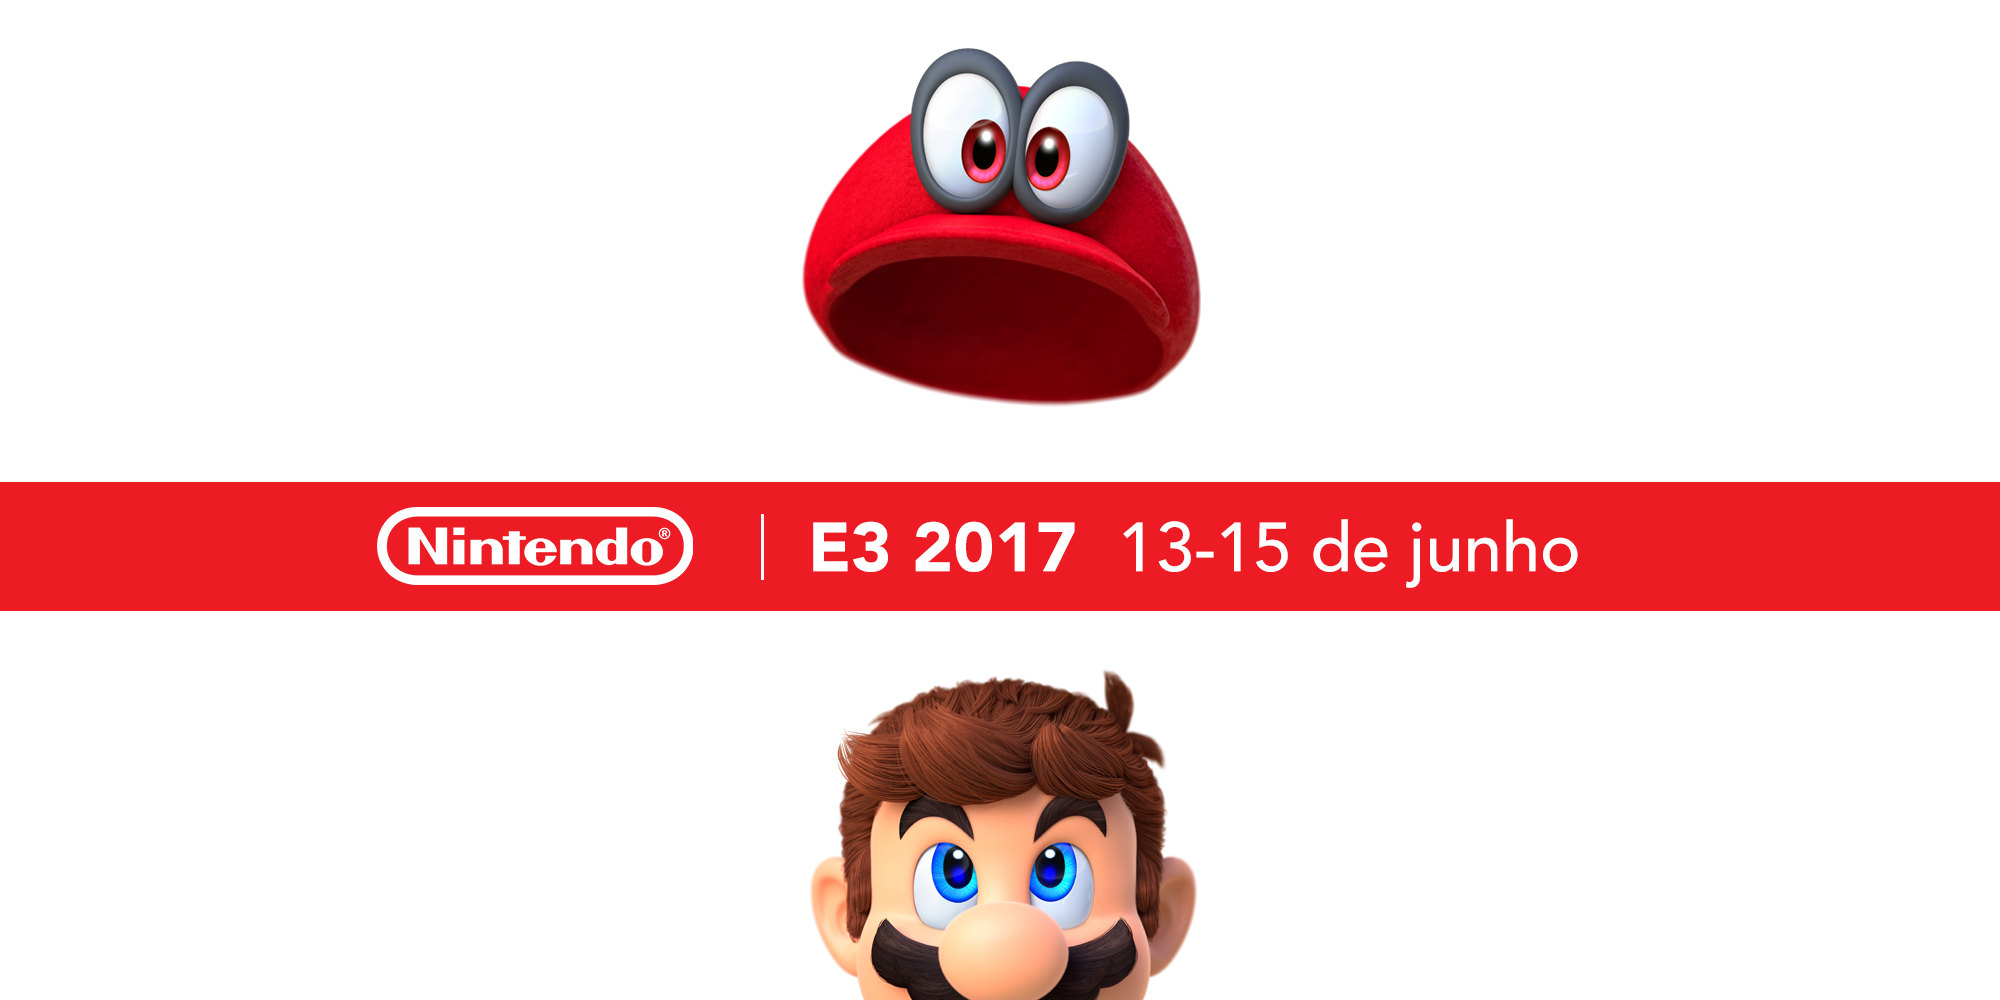 Nintendo Switch, Super Mario Odyssey e torneios de ARMS e Splatoon 2 serão os destaques da E3 2017